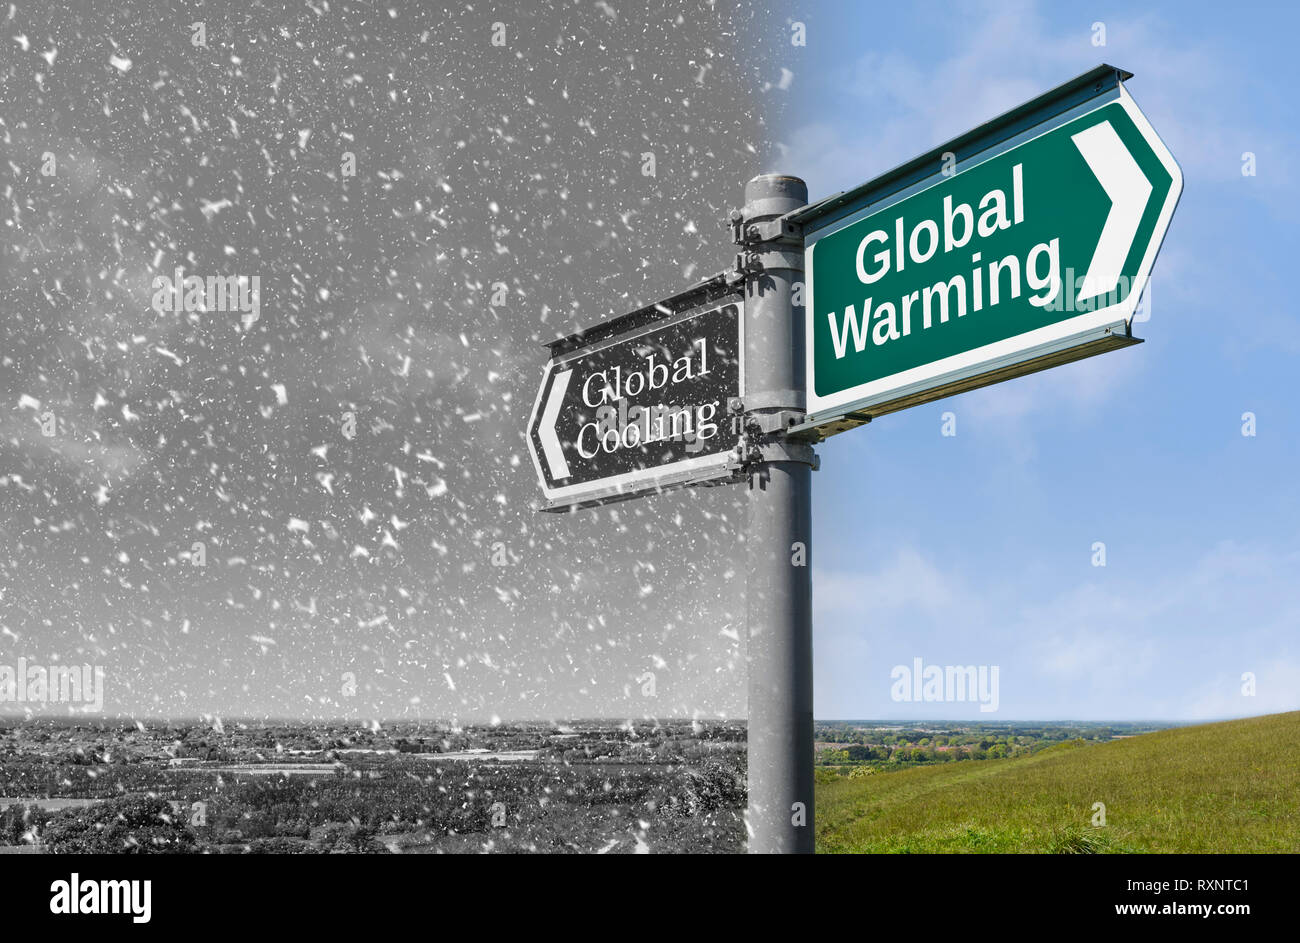 Le réchauffement de la vs refroidissement global concept signe, montrant plus chaude et un temps plus frais au cours d'une période de changement climatique. Banque D'Images